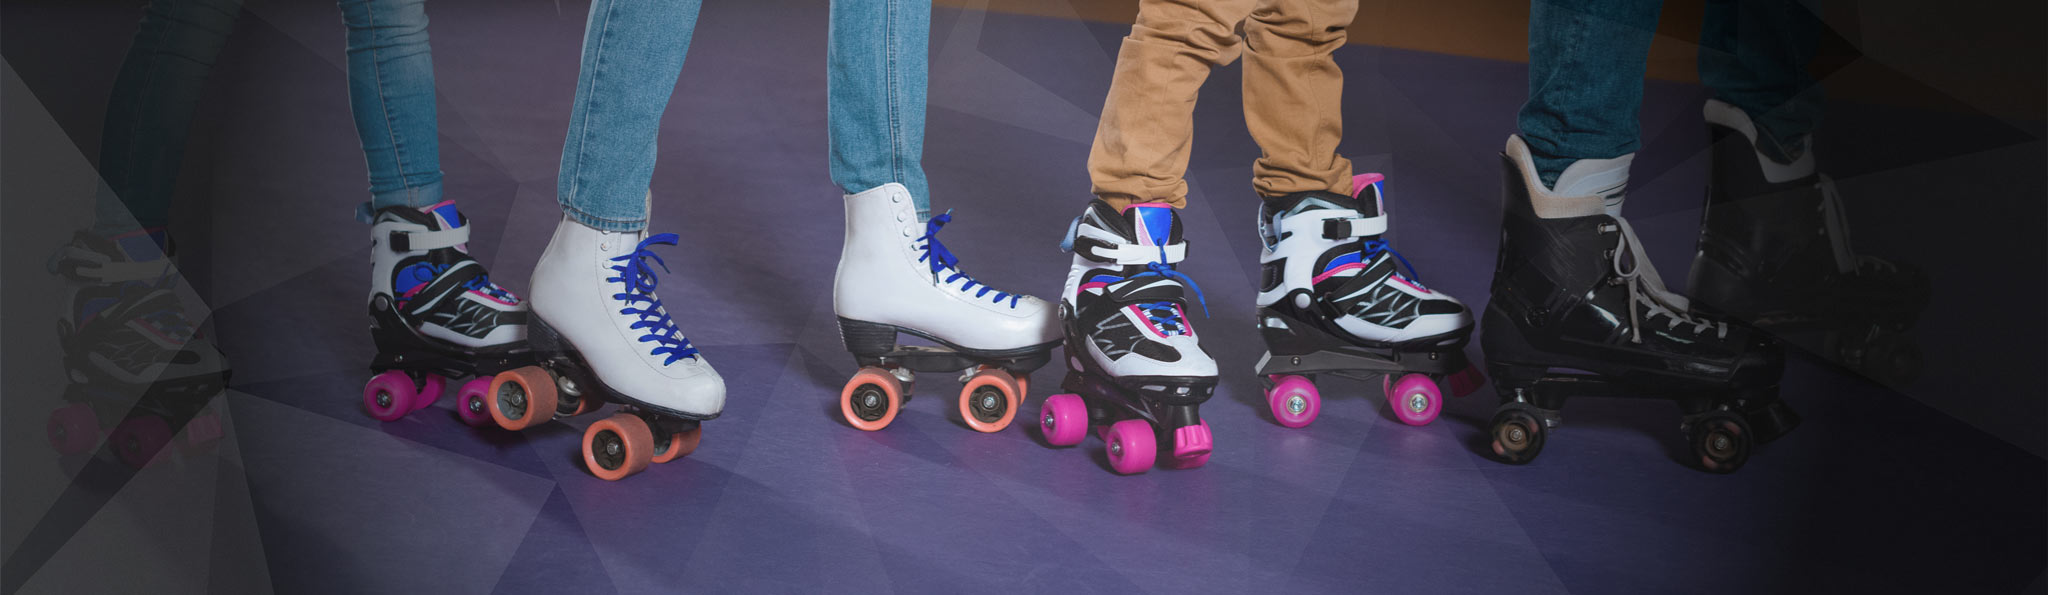 people on roller skates